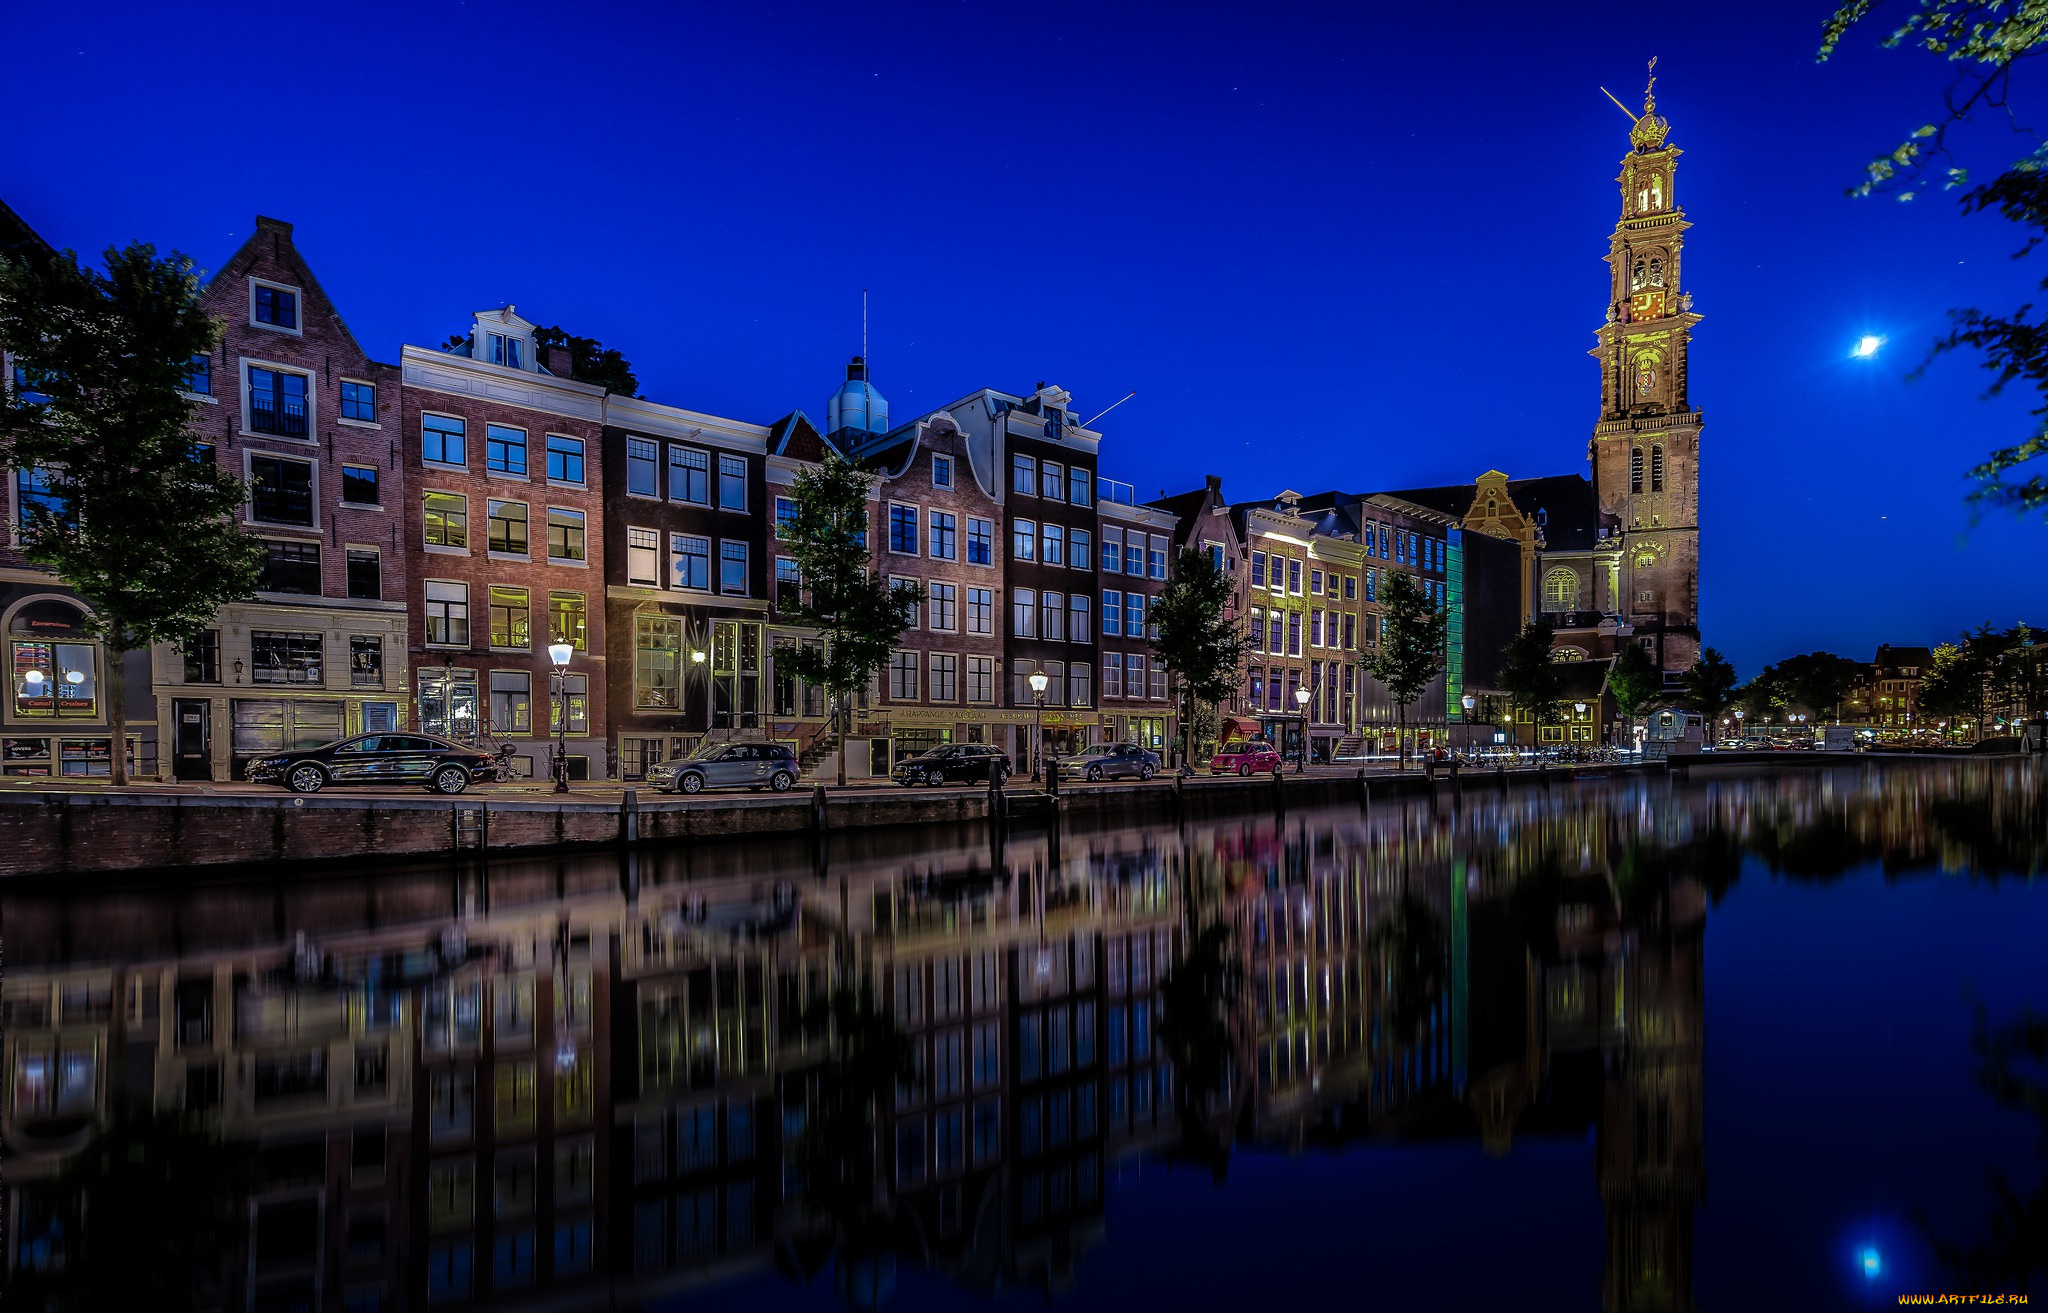 города, амстердам, , нидерланды, авто, машины, здания, amsterdam, netherlands, westerkerk, prinsengracht, канал, принсенграхт, амстердам, вестеркерк, ночной, город, набережная, отражение, церковь